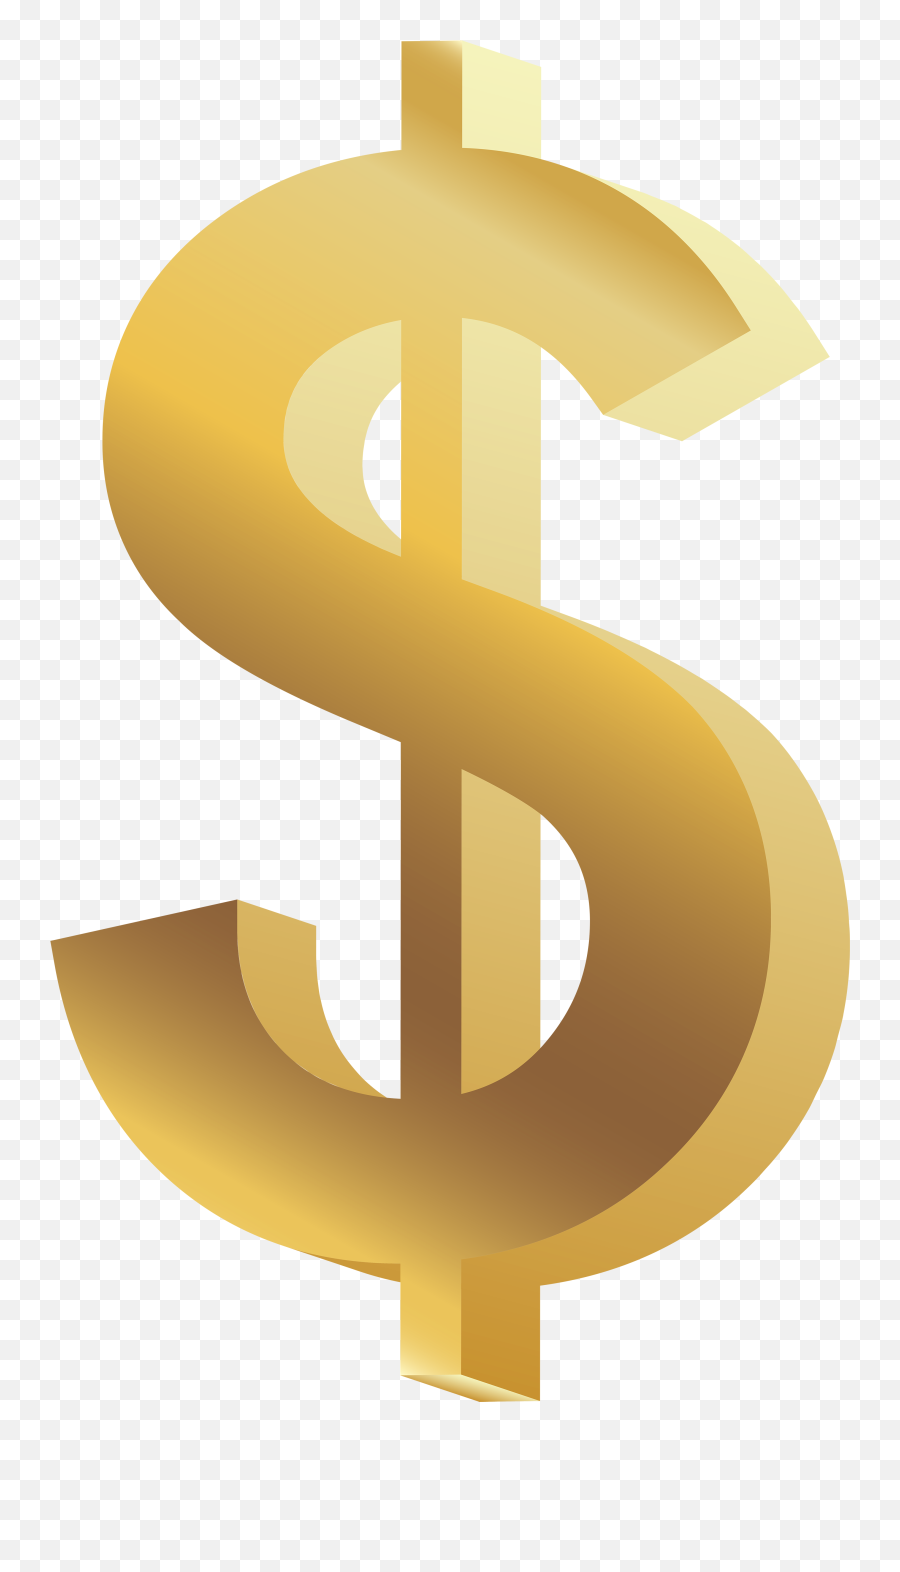 Money Symbol Png U0026 Free Money Symbolpng Transparent Images - Money Symbol Png Emoji,Dollar Sign Transparent Background